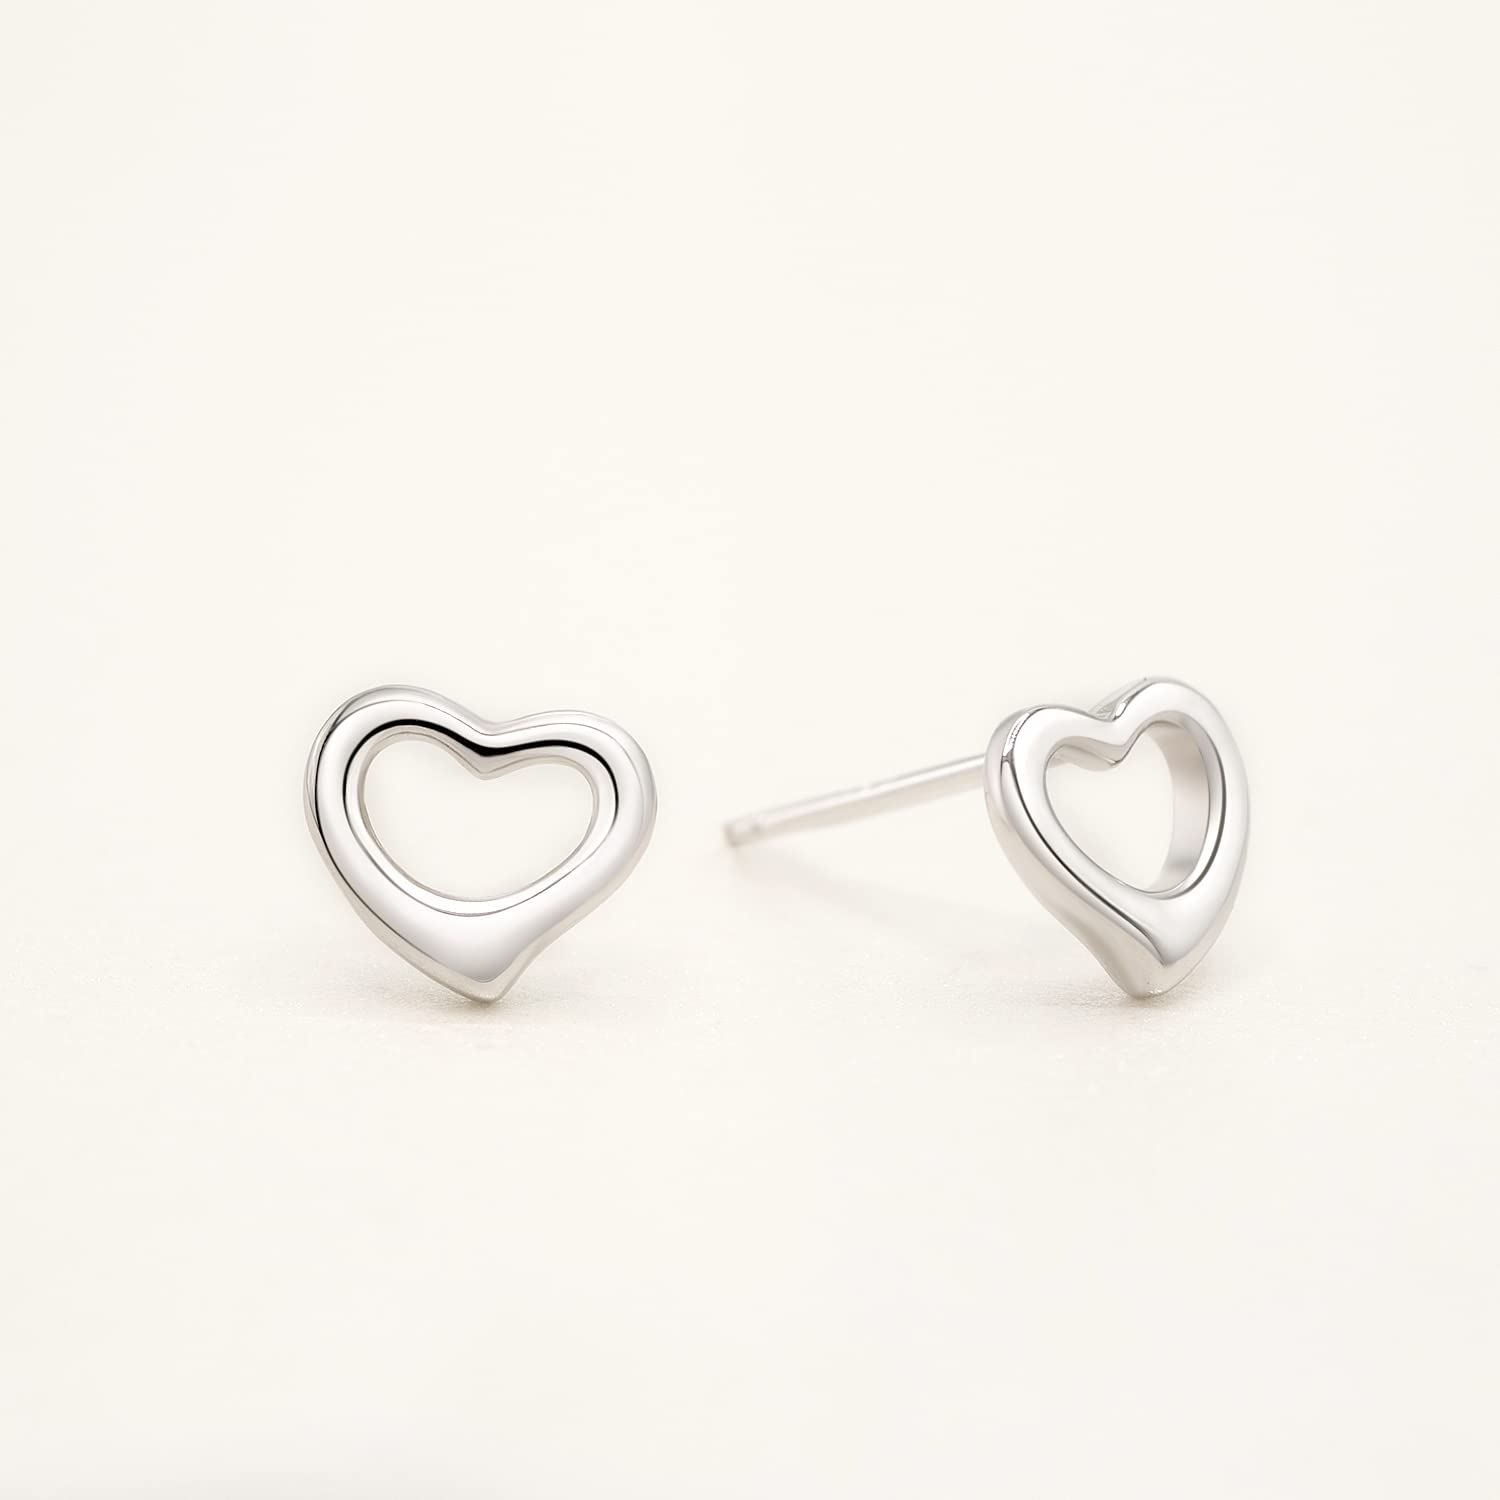 Lavishe 925 Sterling Silver Plain Hollow Heart Stud Earrings Hypoallergenic for Women